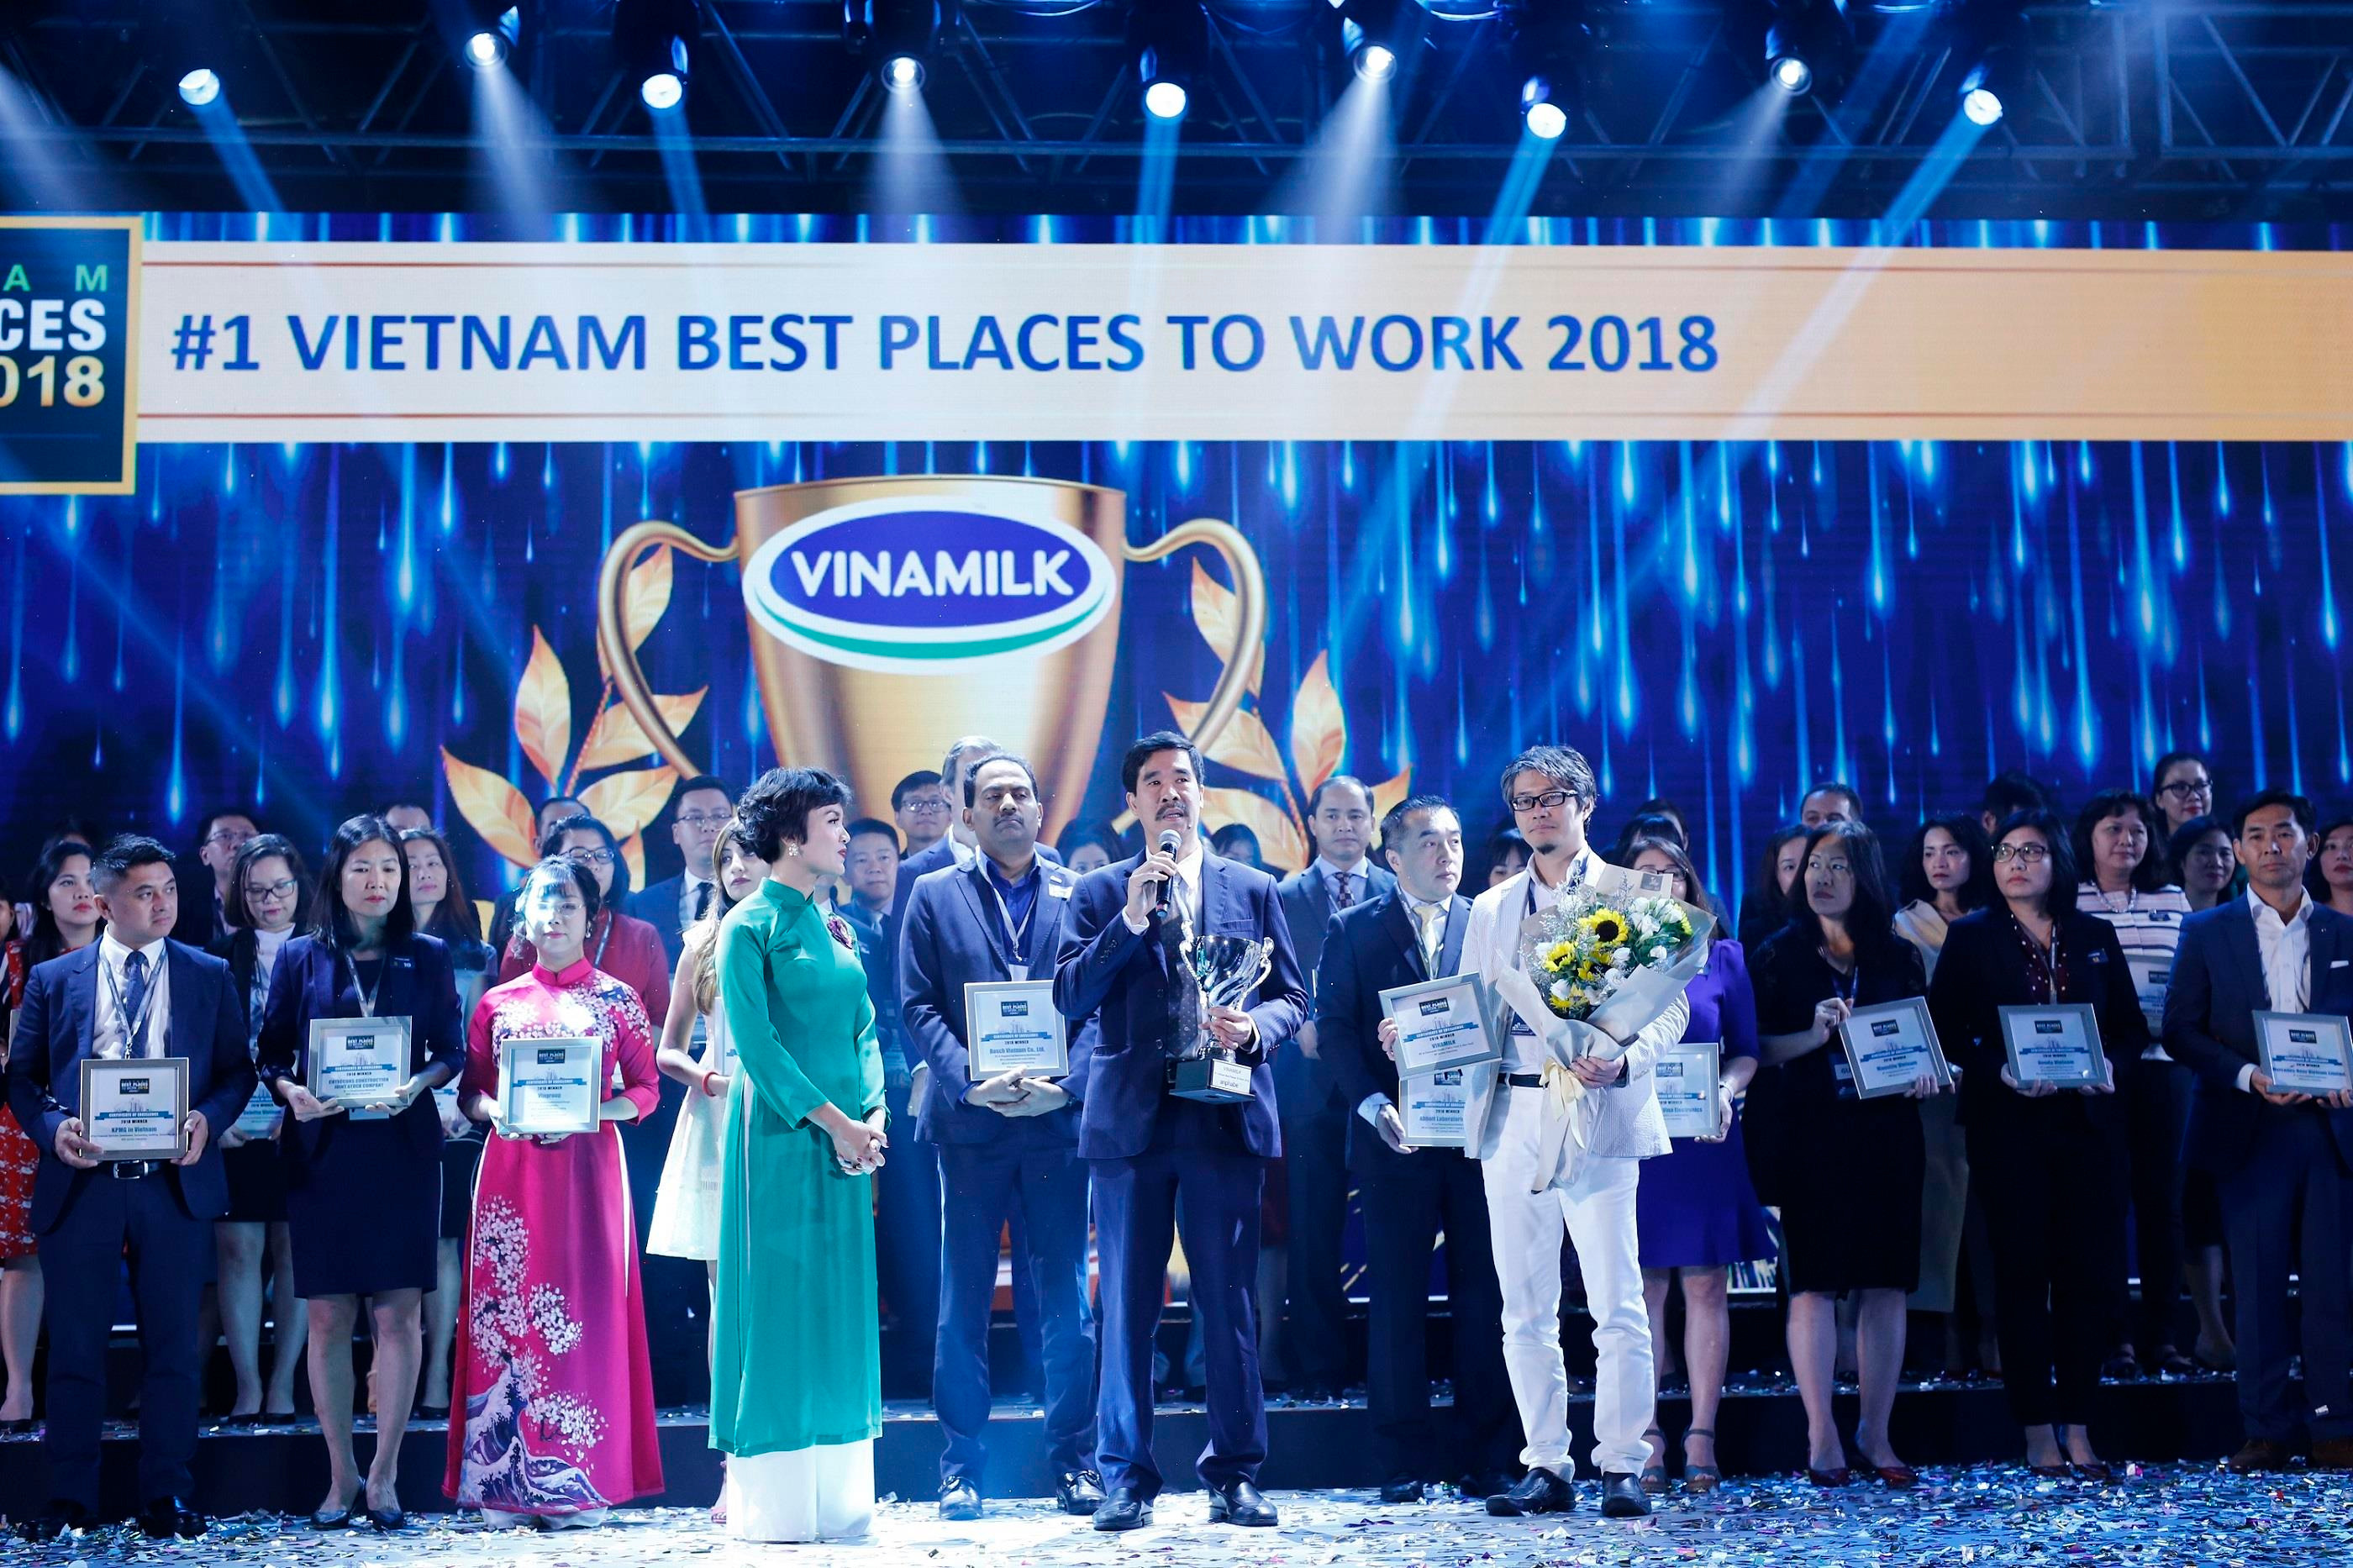 Ông Nguyễn Quốc Khánh - Giám đốc Điều hành Vinamilk nhận giải thưởng “Top 100 nơi làm việc tốt nhất” năm 2018. Ảnh: P.V